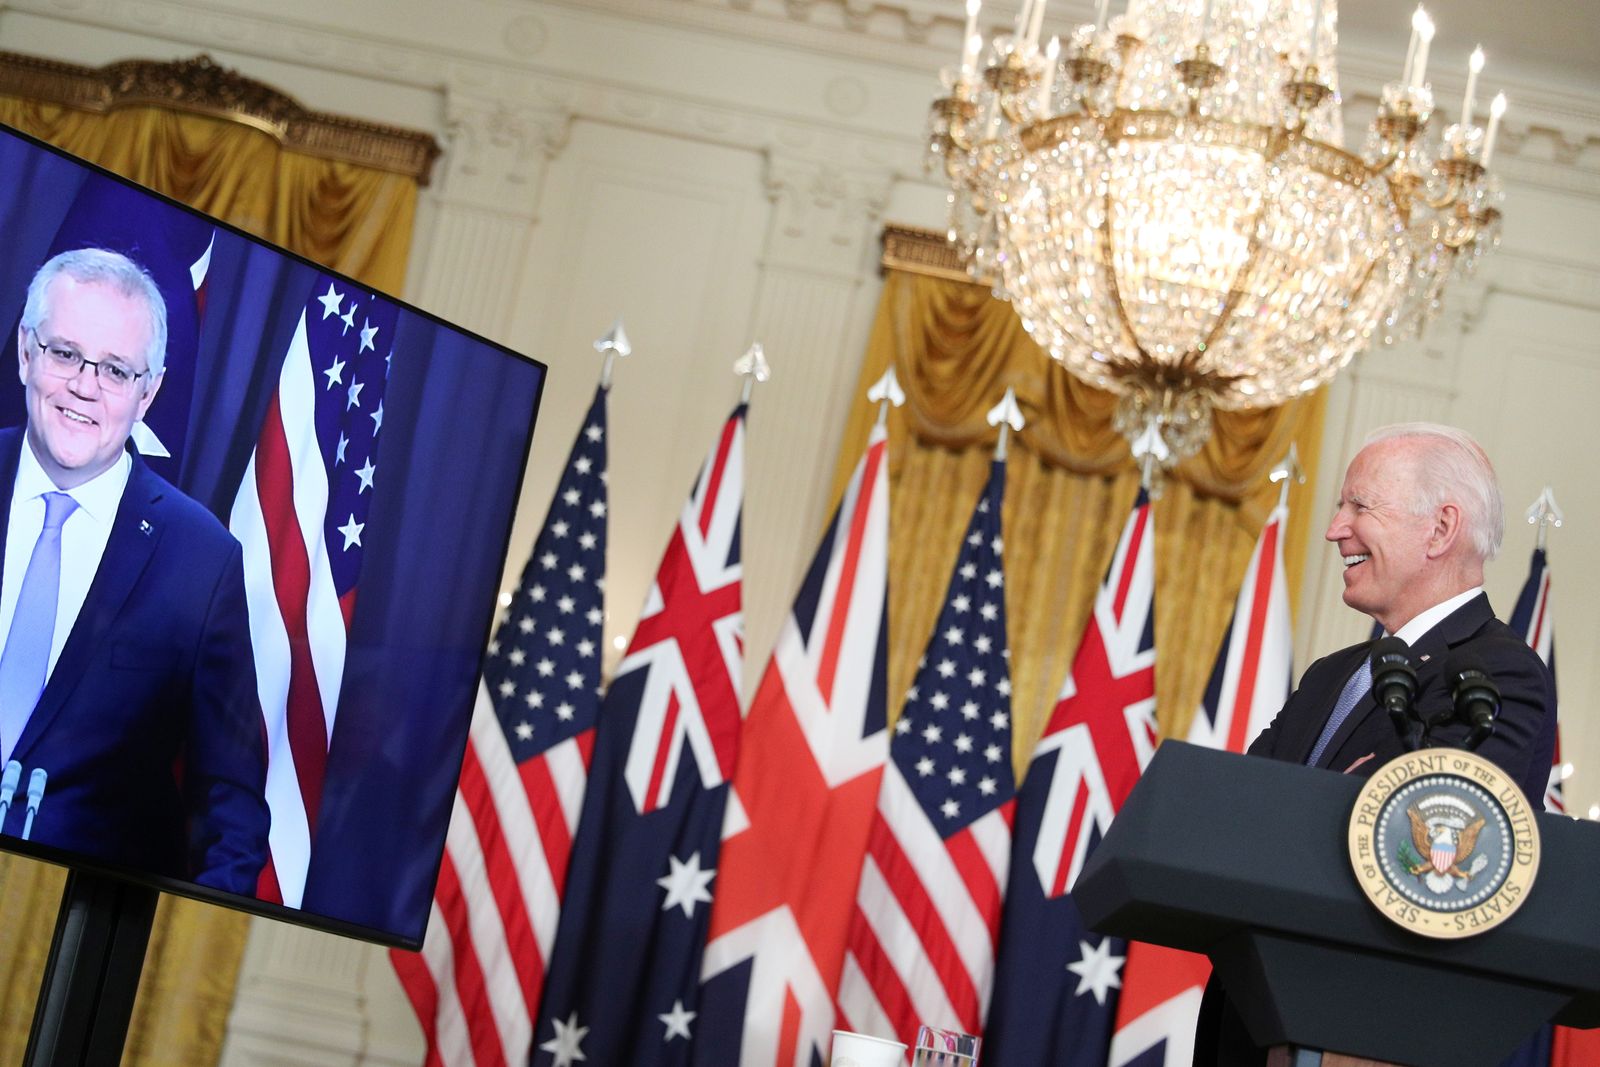 الرئيس الأميركي جو بايدن يبتسم خلال القمة الافتراضية مع رئيس الوزراء الأسترالي سكوت موريسون، الظاهر في الشاشة، ورئيس الوزراء البريطاني بوريس جونسون، في البيت الأبيض - 15 سبتمبر 2021 - REUTERS